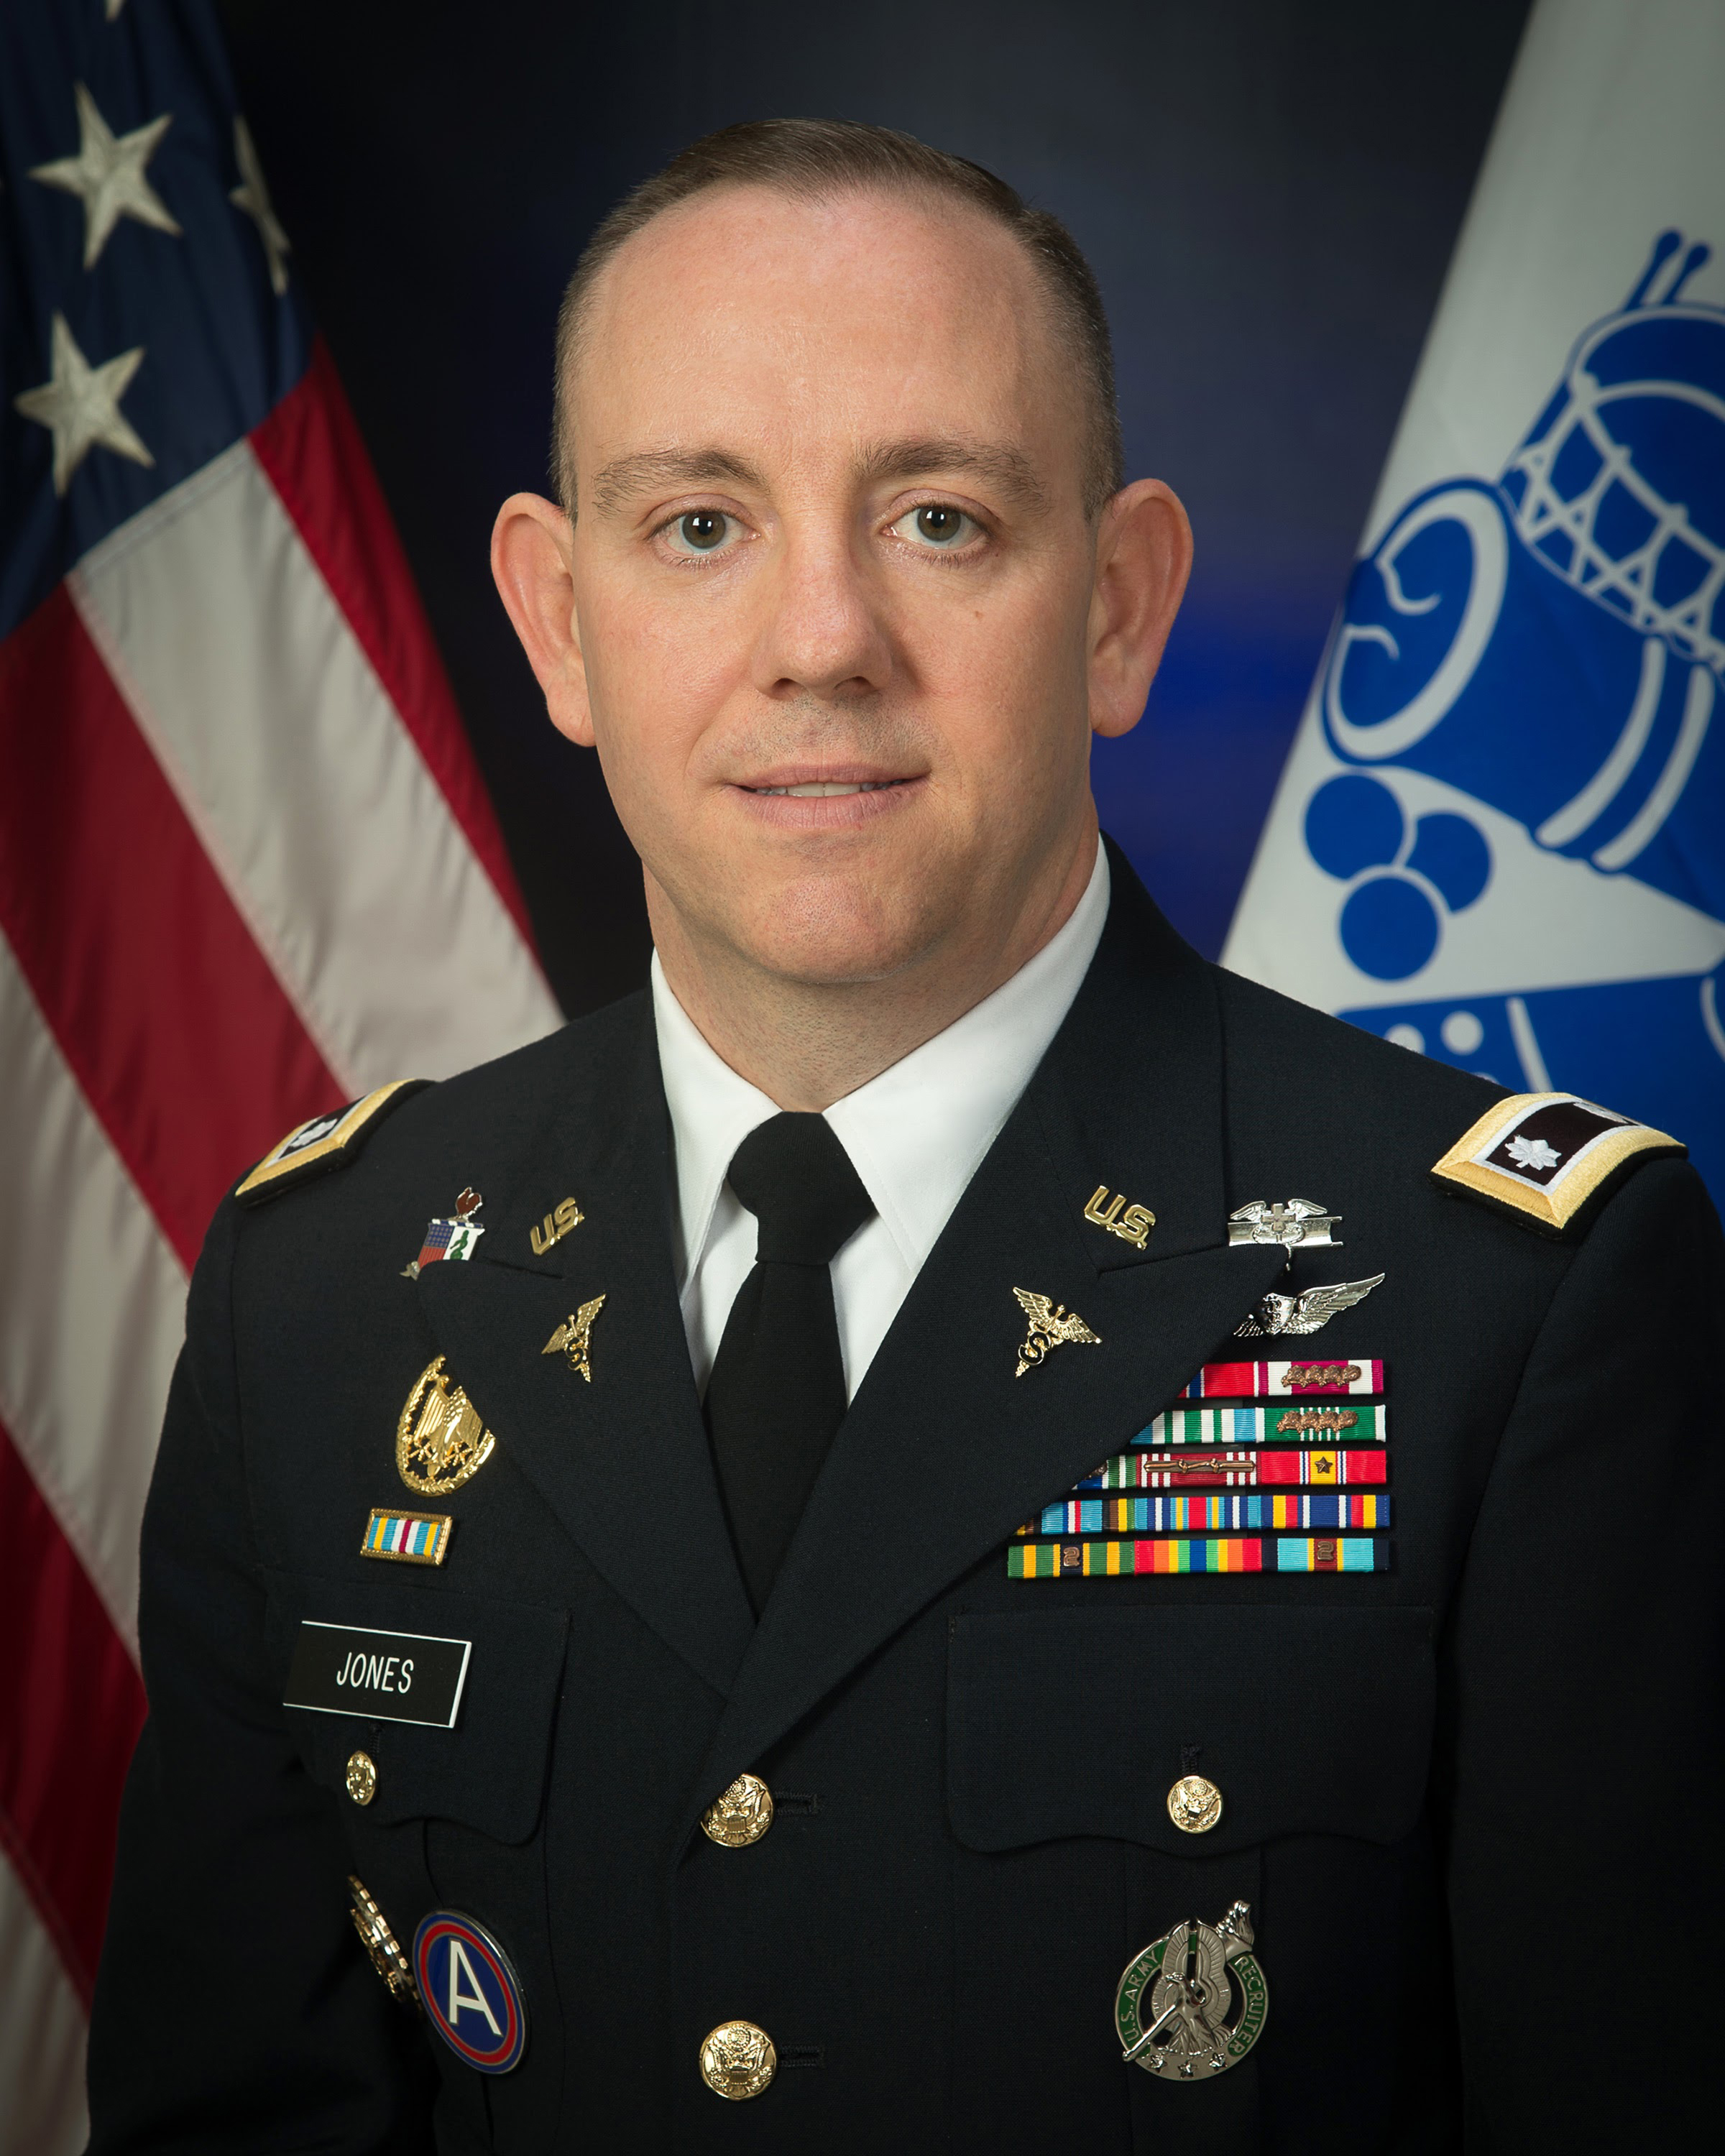 LTC James Jones, U.S. Army, PA-C